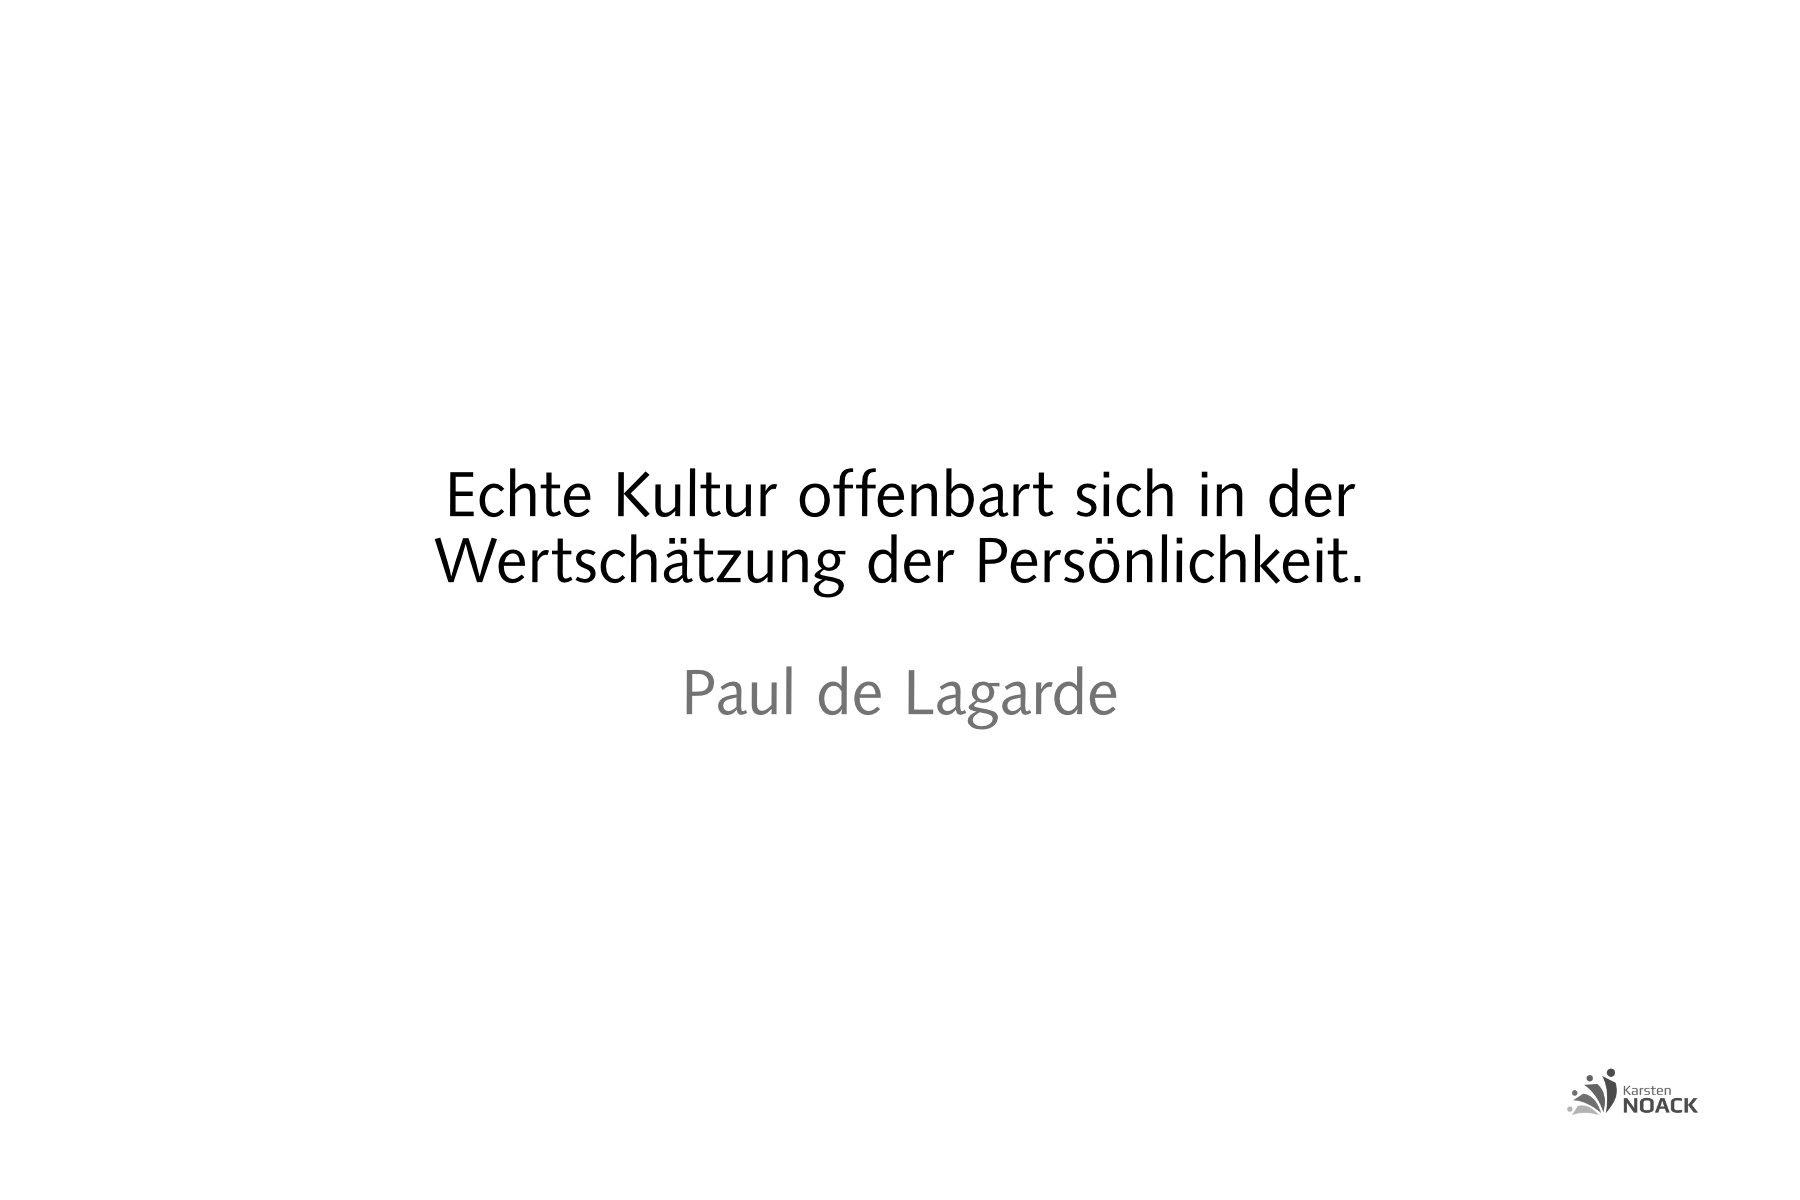 Echte Kultur offenbart sich in der Wertschätzung der Persönlichkeit. Paul de Lagarde